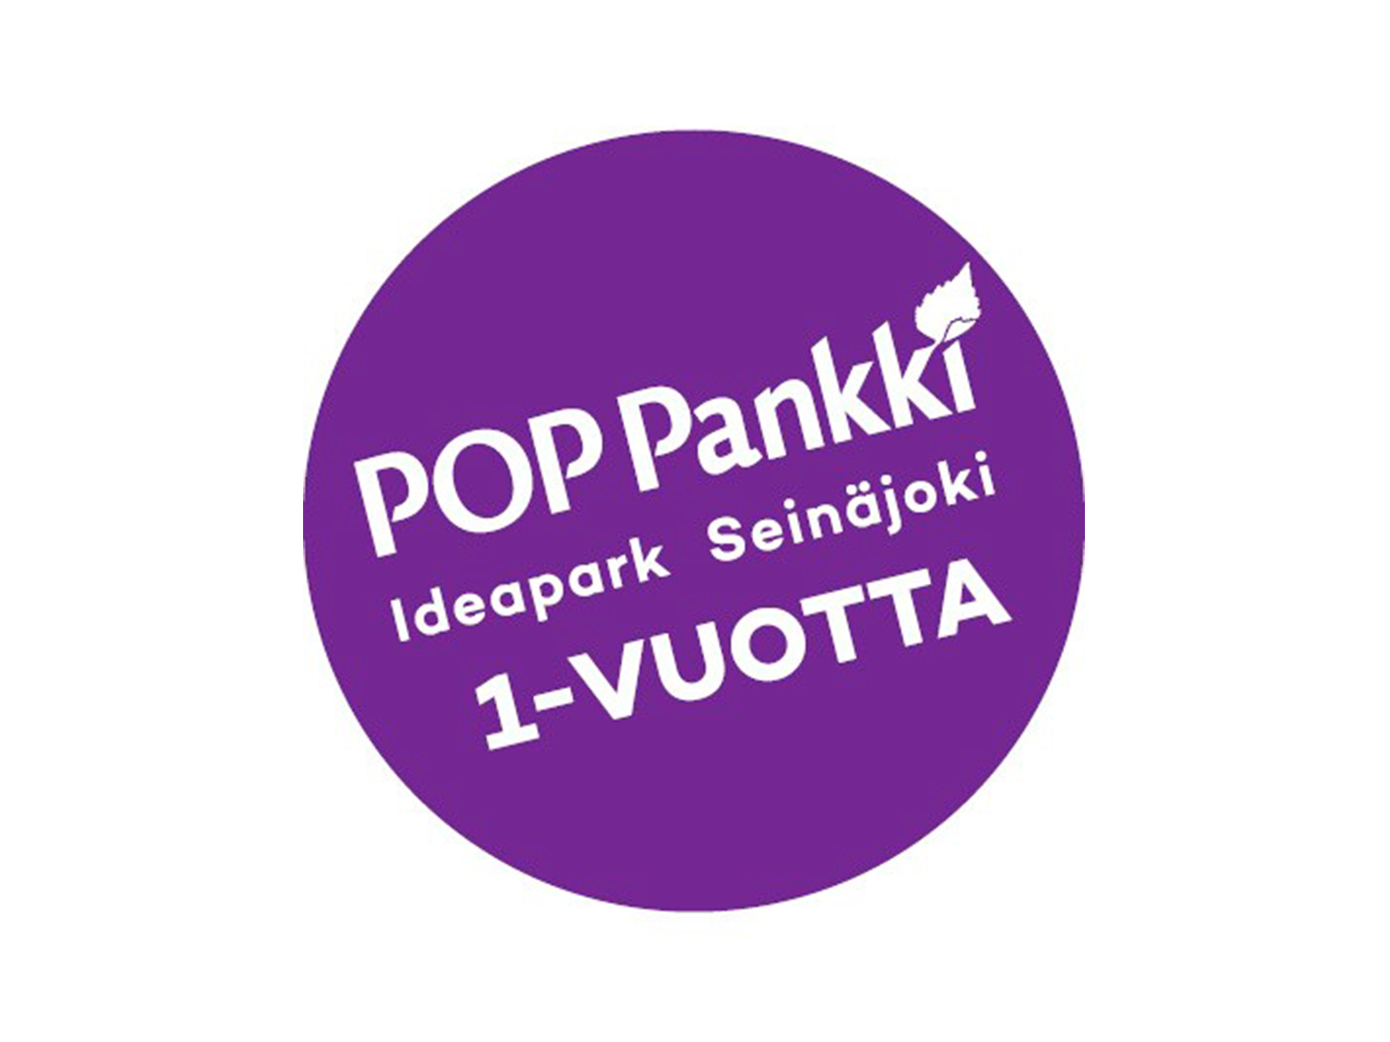 POP Pankki Ideapark Seinäjoki 1 vuotta, kuvituskuva. 